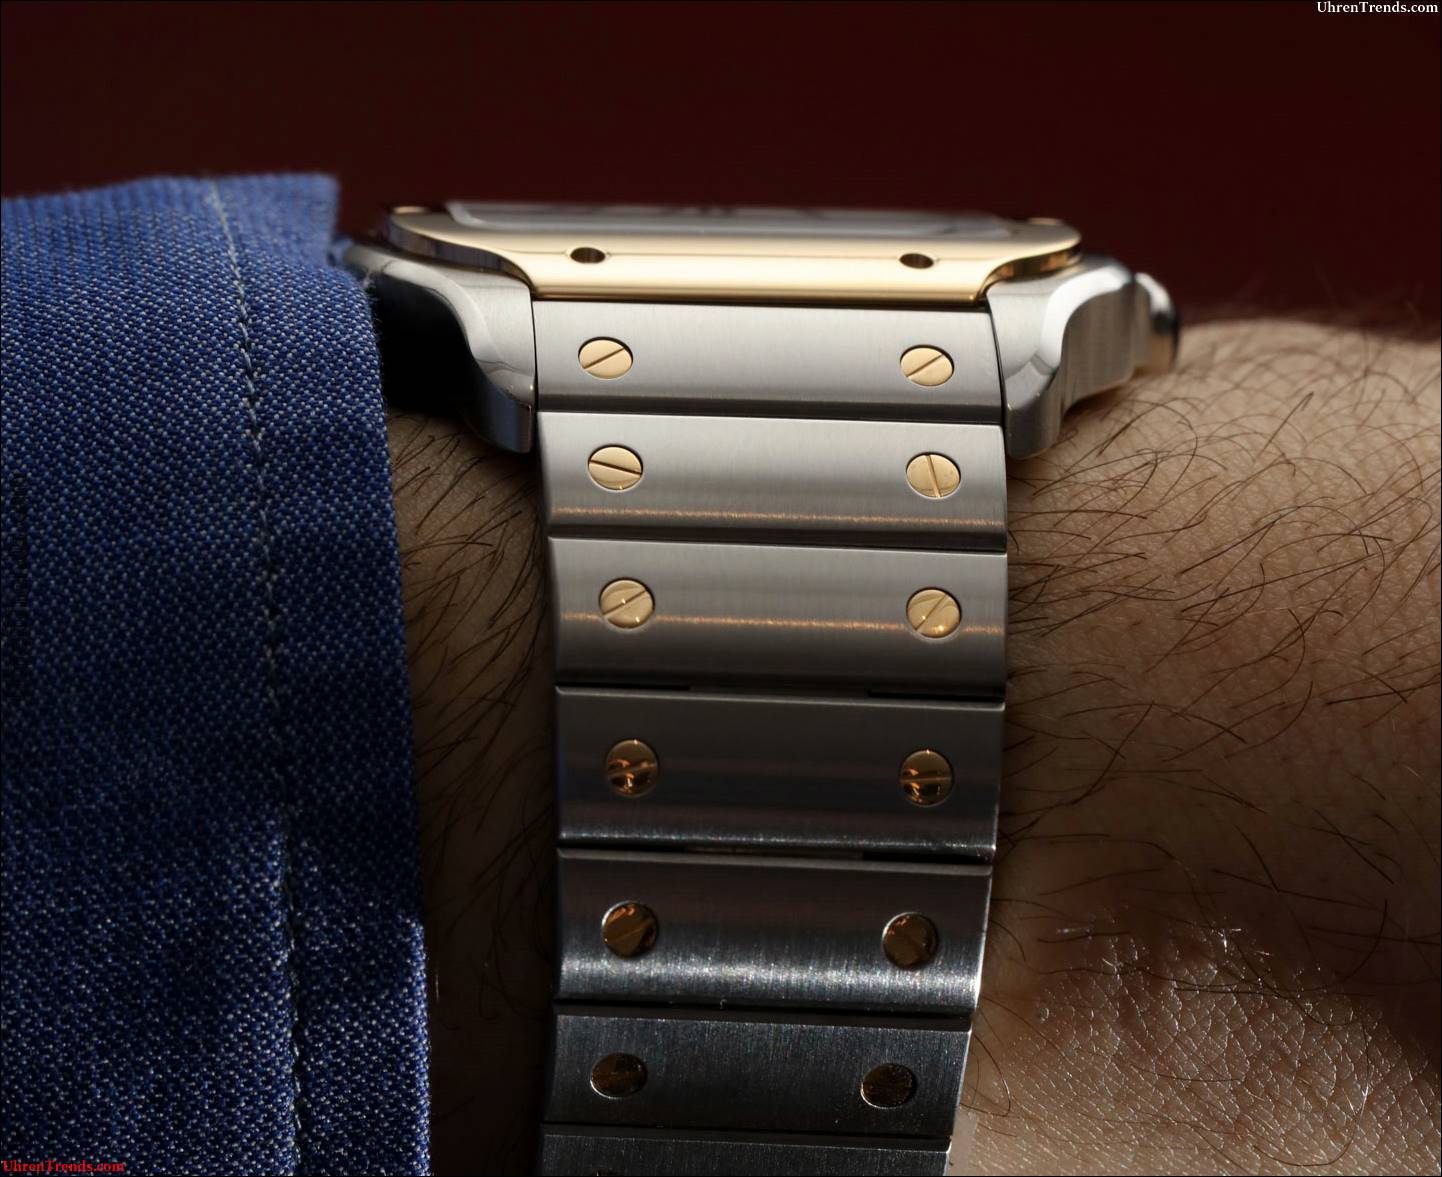 Cartier Santos Uhren für 2018 wird ein Hit mit den Käufern sein  